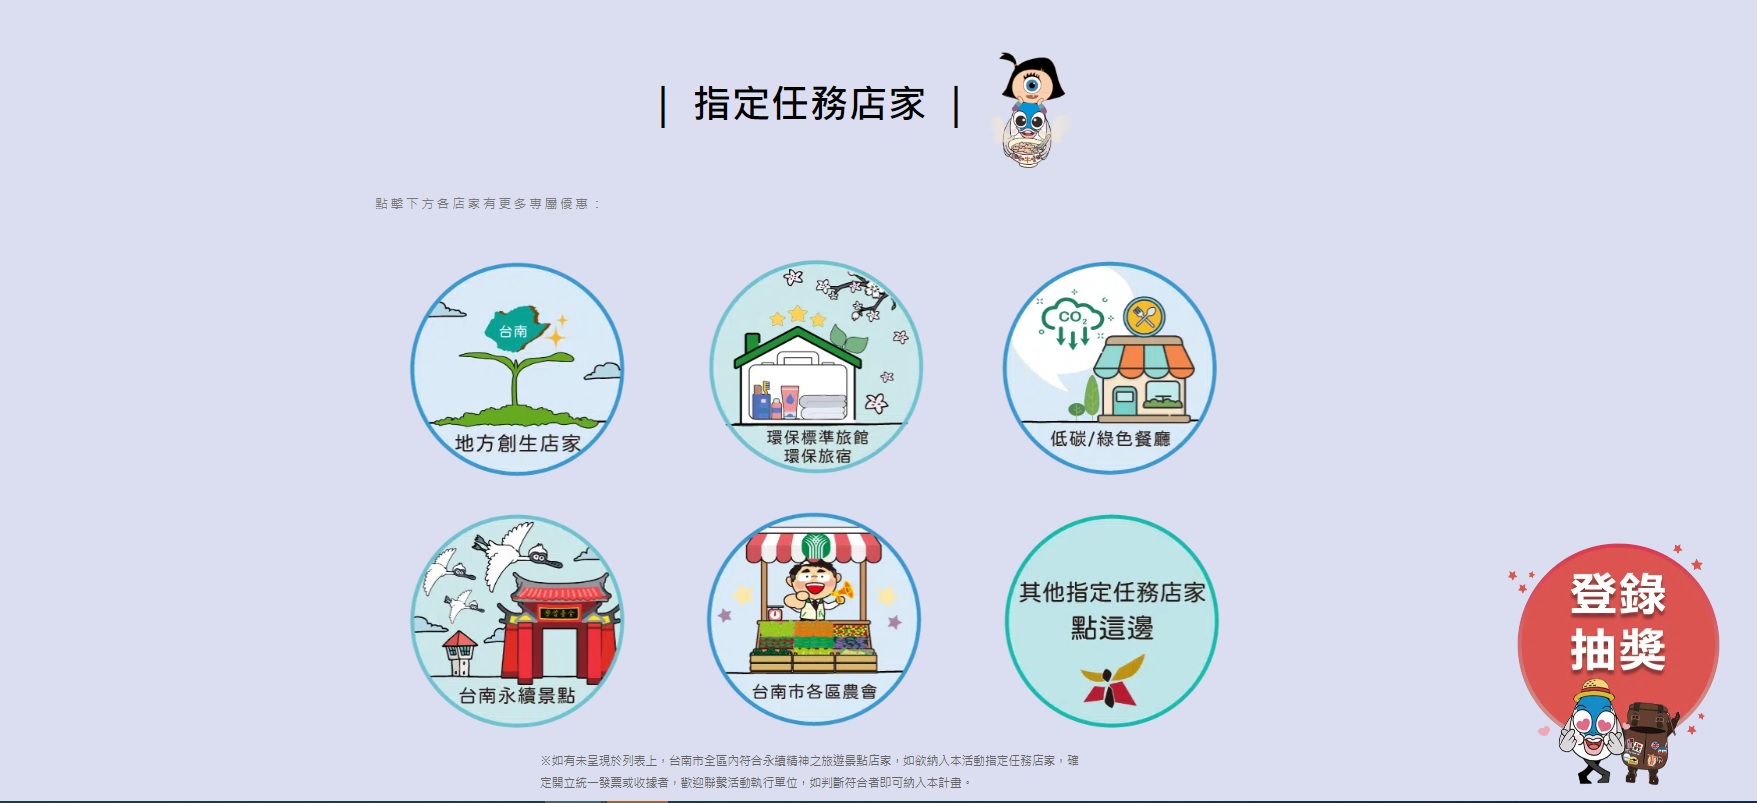 台 南 觀 旅 局 推 出 永 續 旅 遊 計 畫 